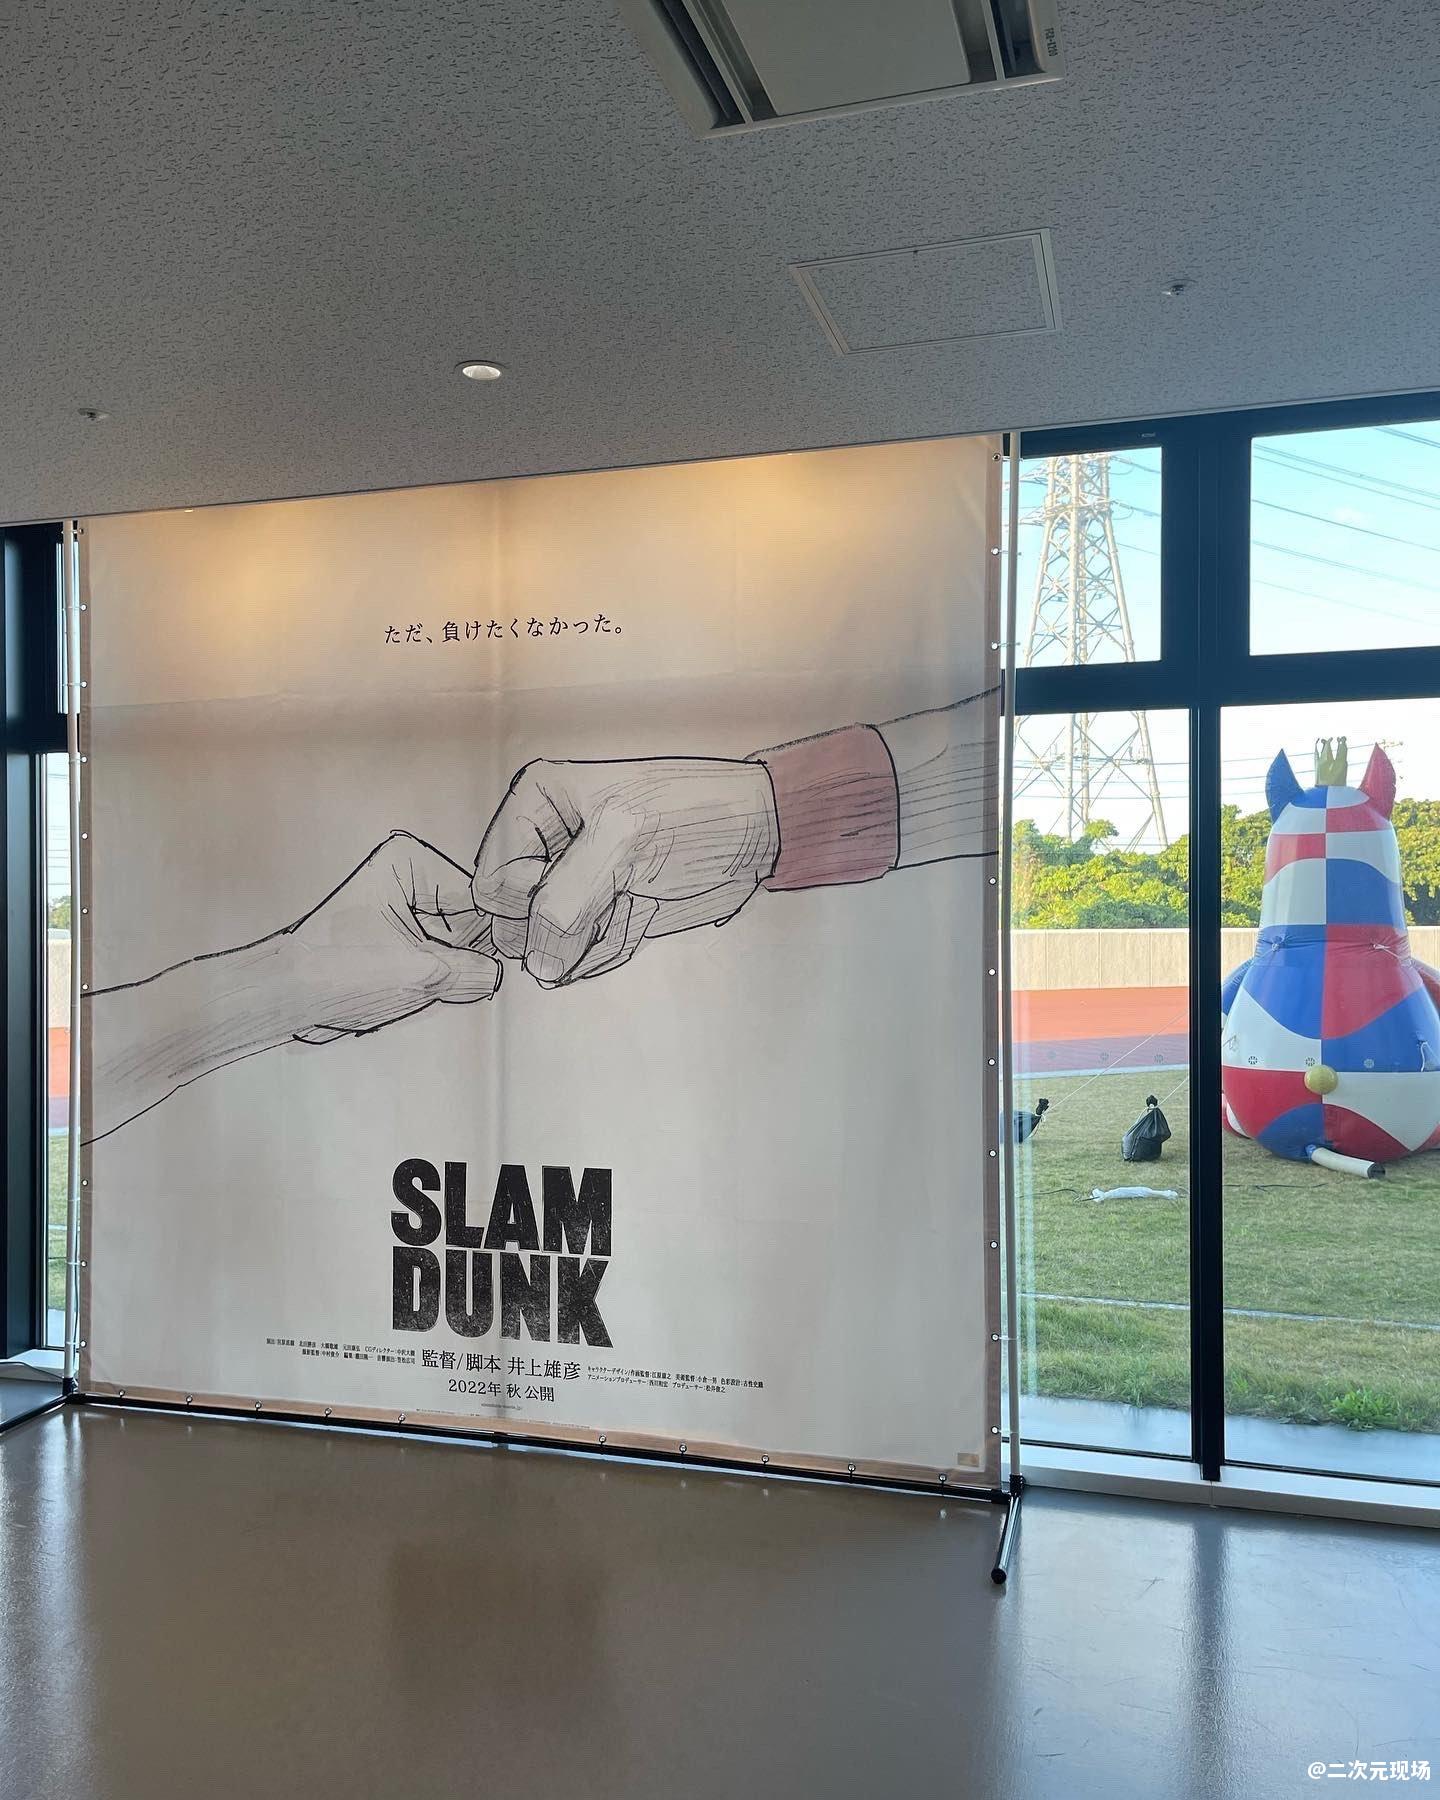 《灌篮高手》新剧场版海报在篮球联赛馆内突然公布